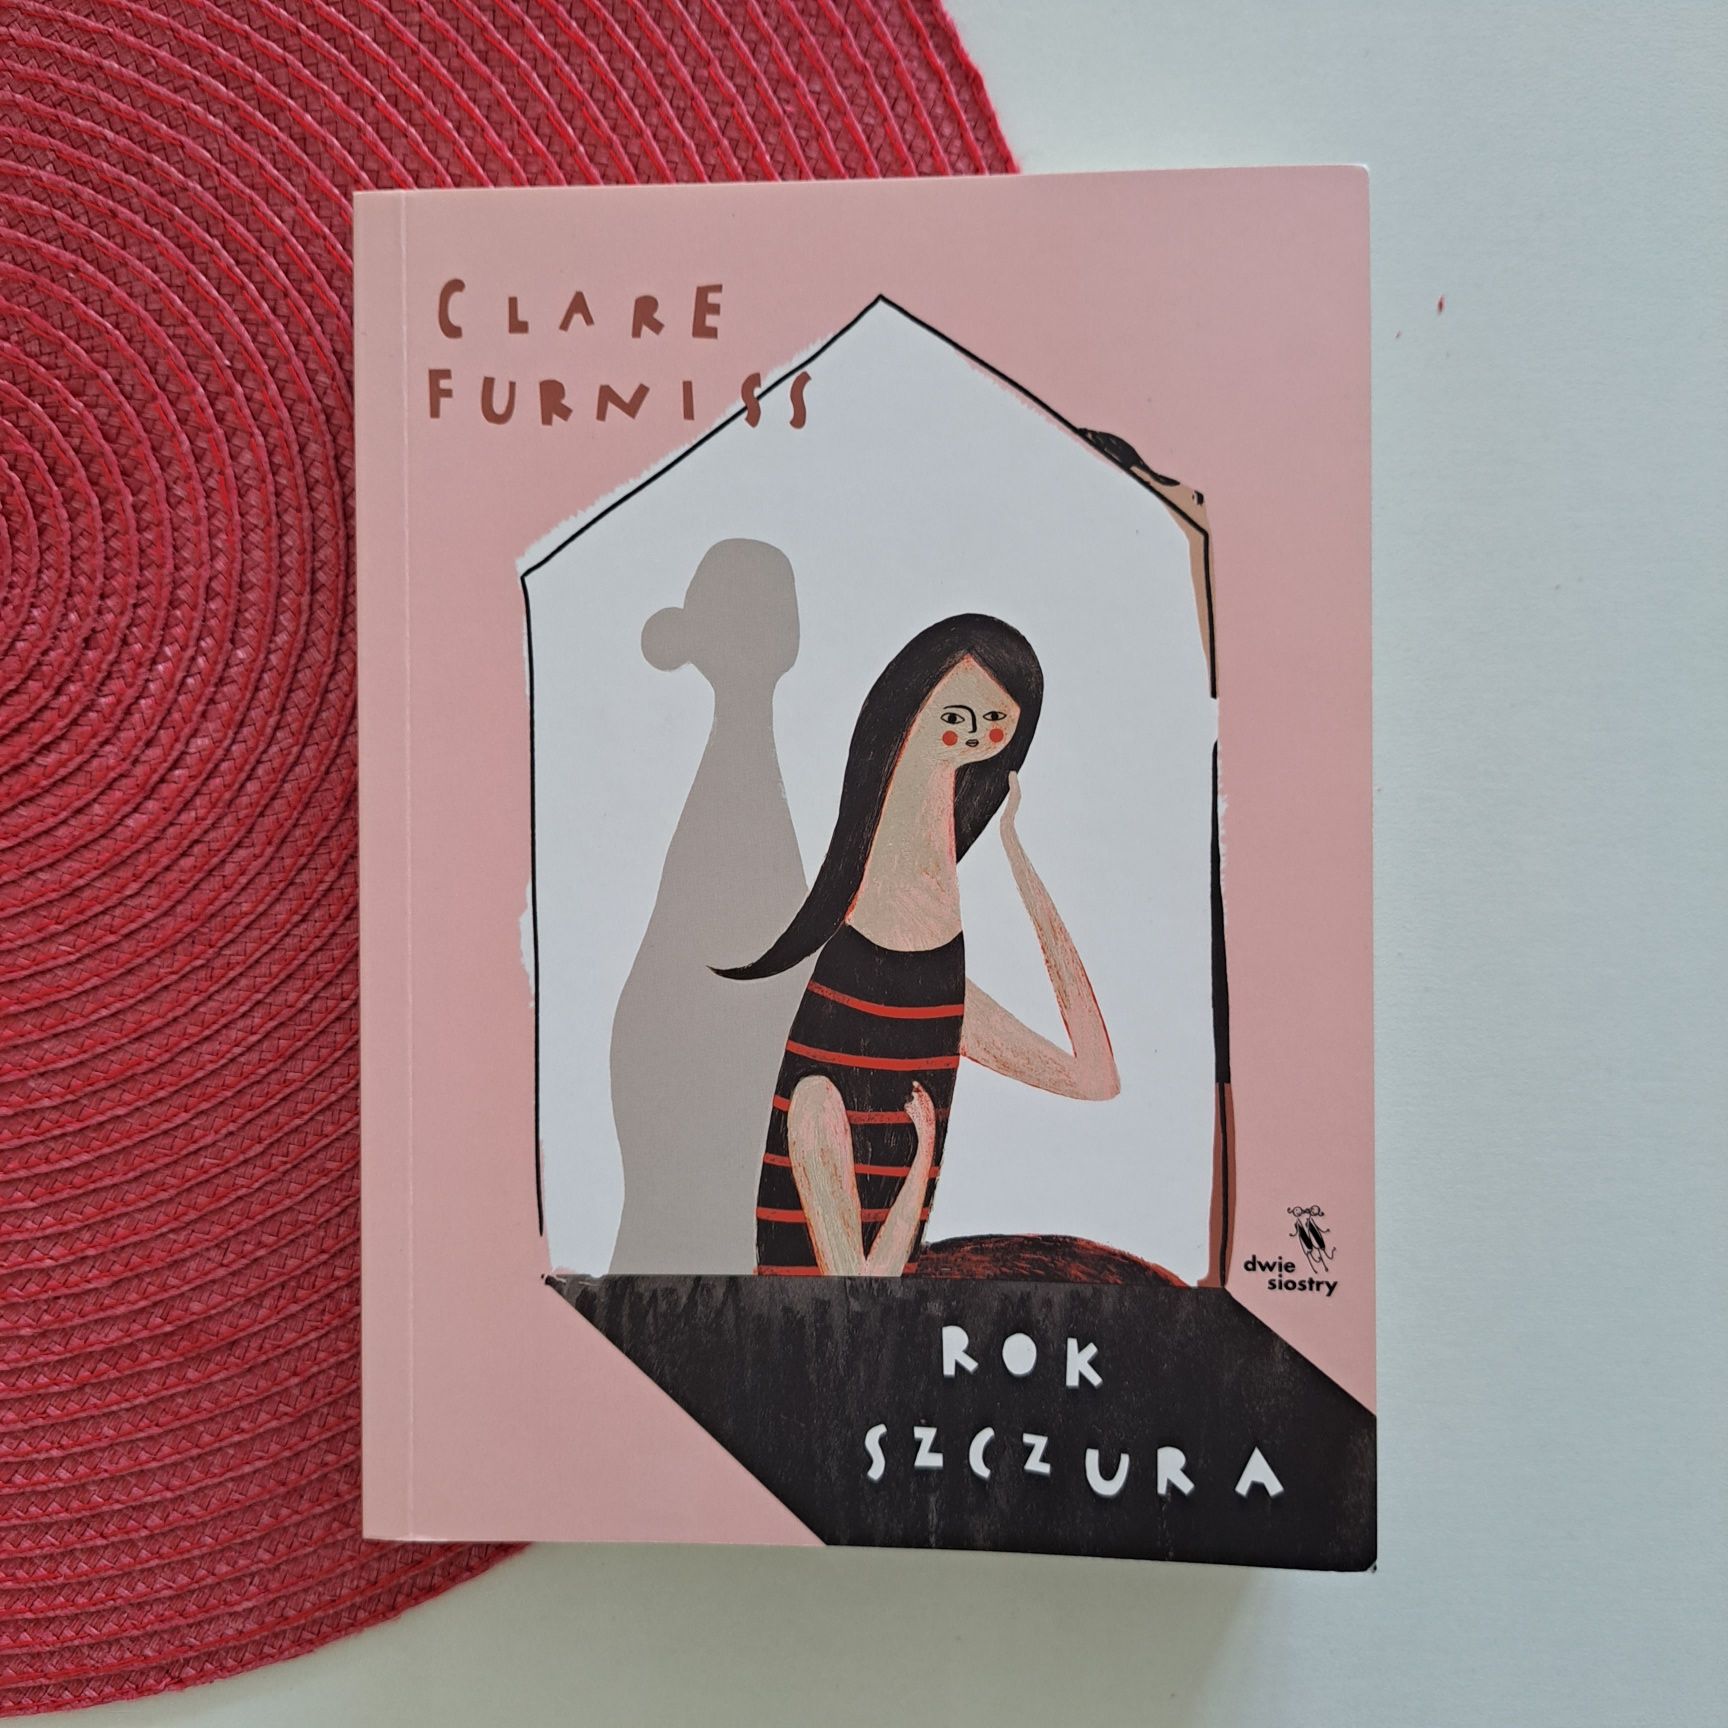 Rok szczura / Clare Furniss / Wydawnictwo Dwie Siostry